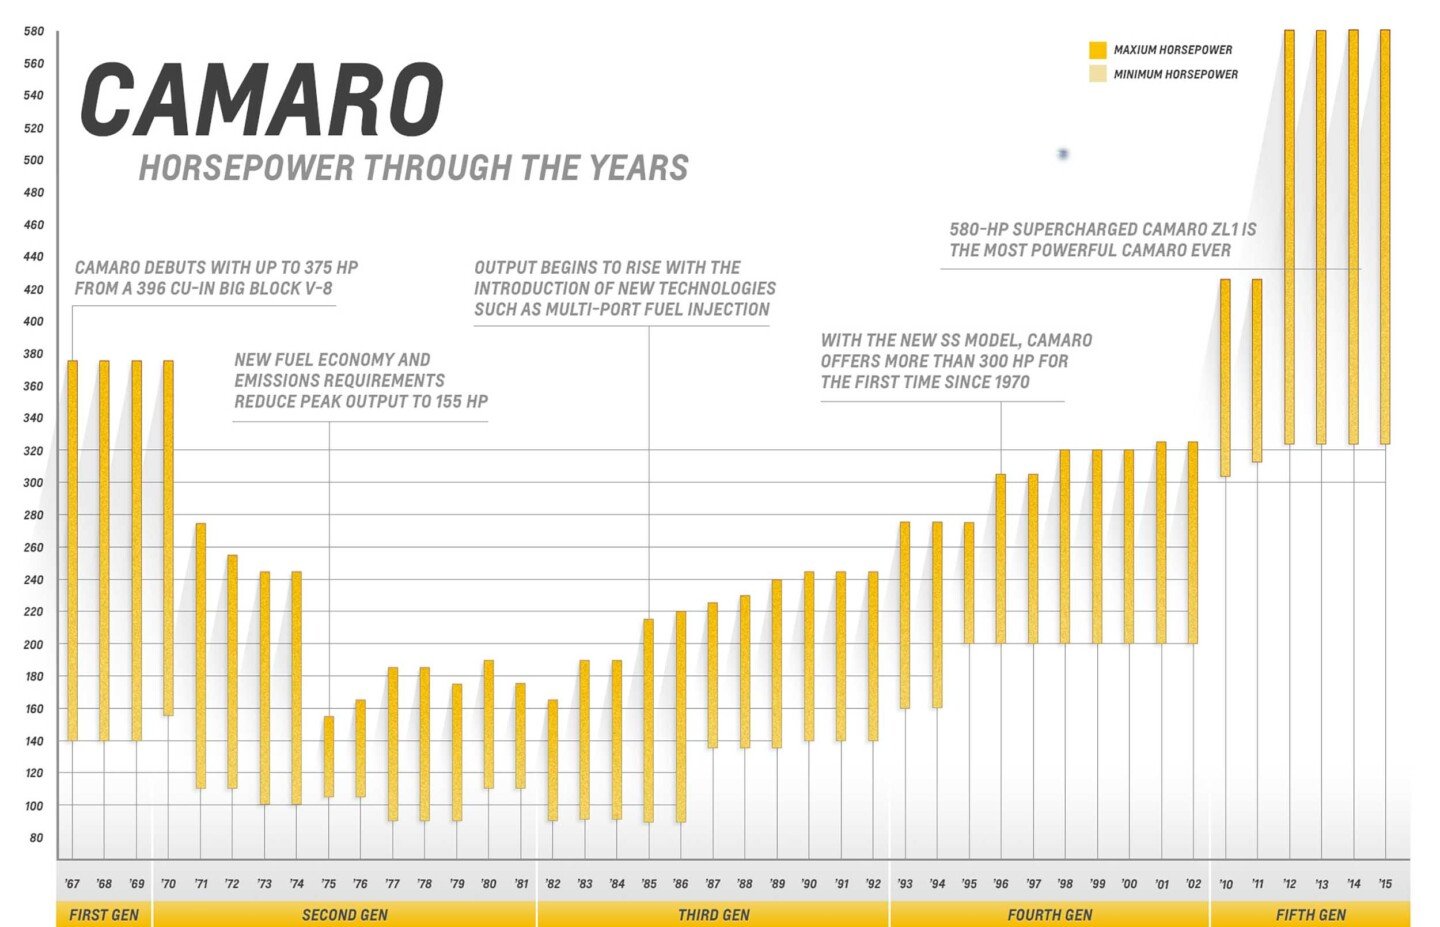 Camaro horsepower through the years